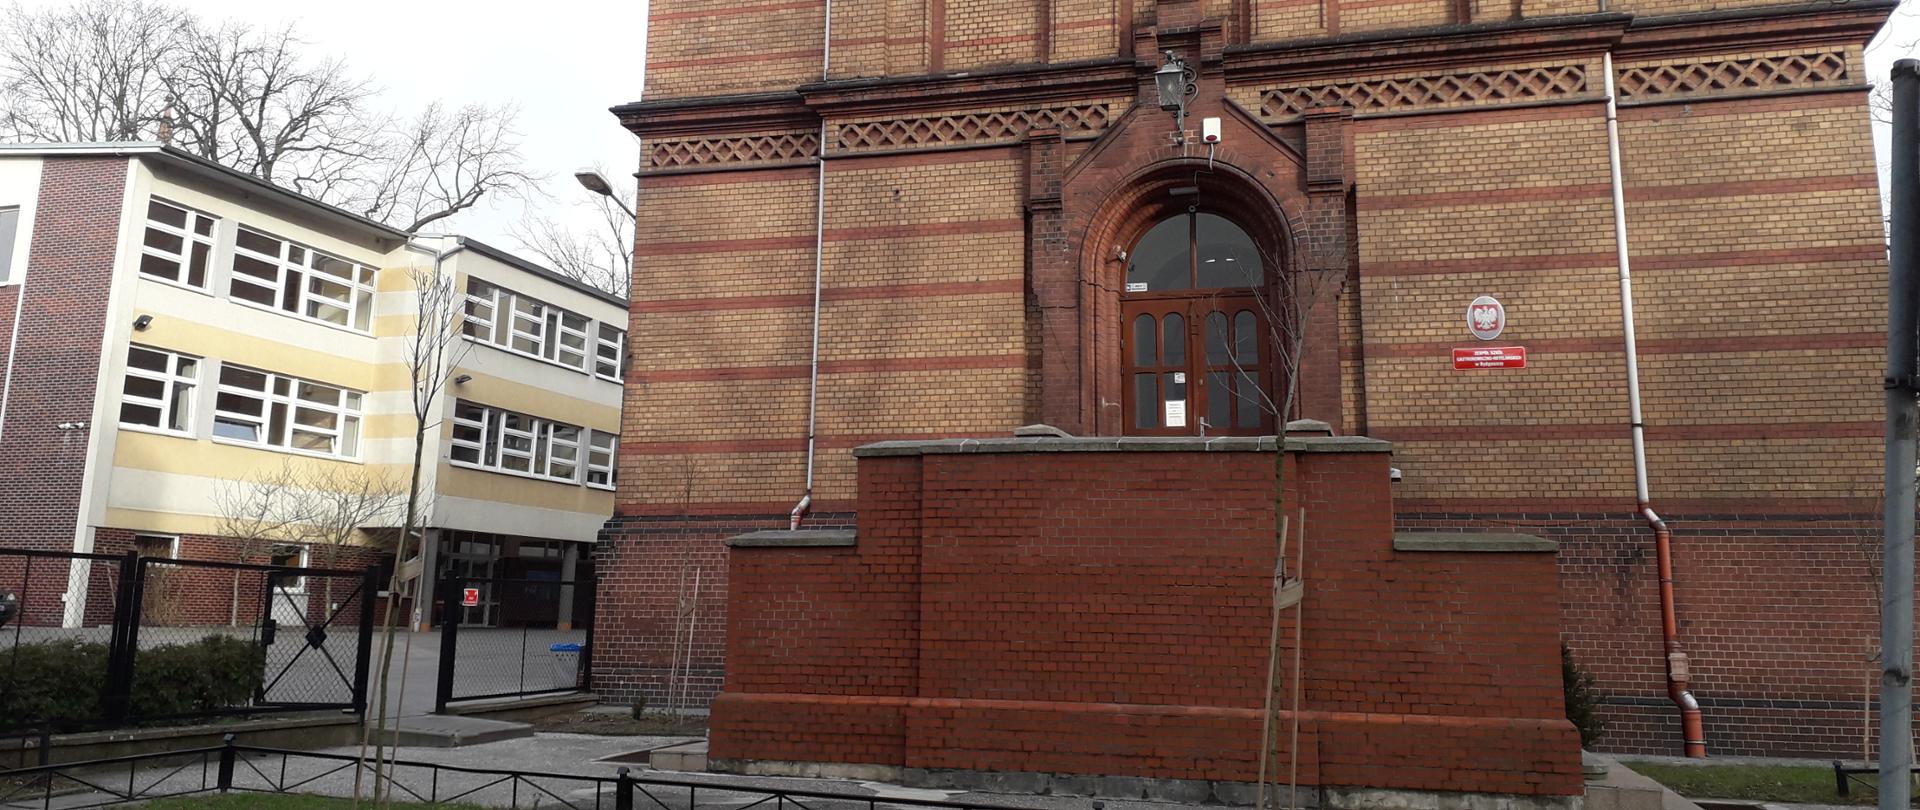 Zdjęcie przedstawia wejście do budynku Zespołu Szkół Gastronomiczno-Hotelarskich w Bydgoszcz